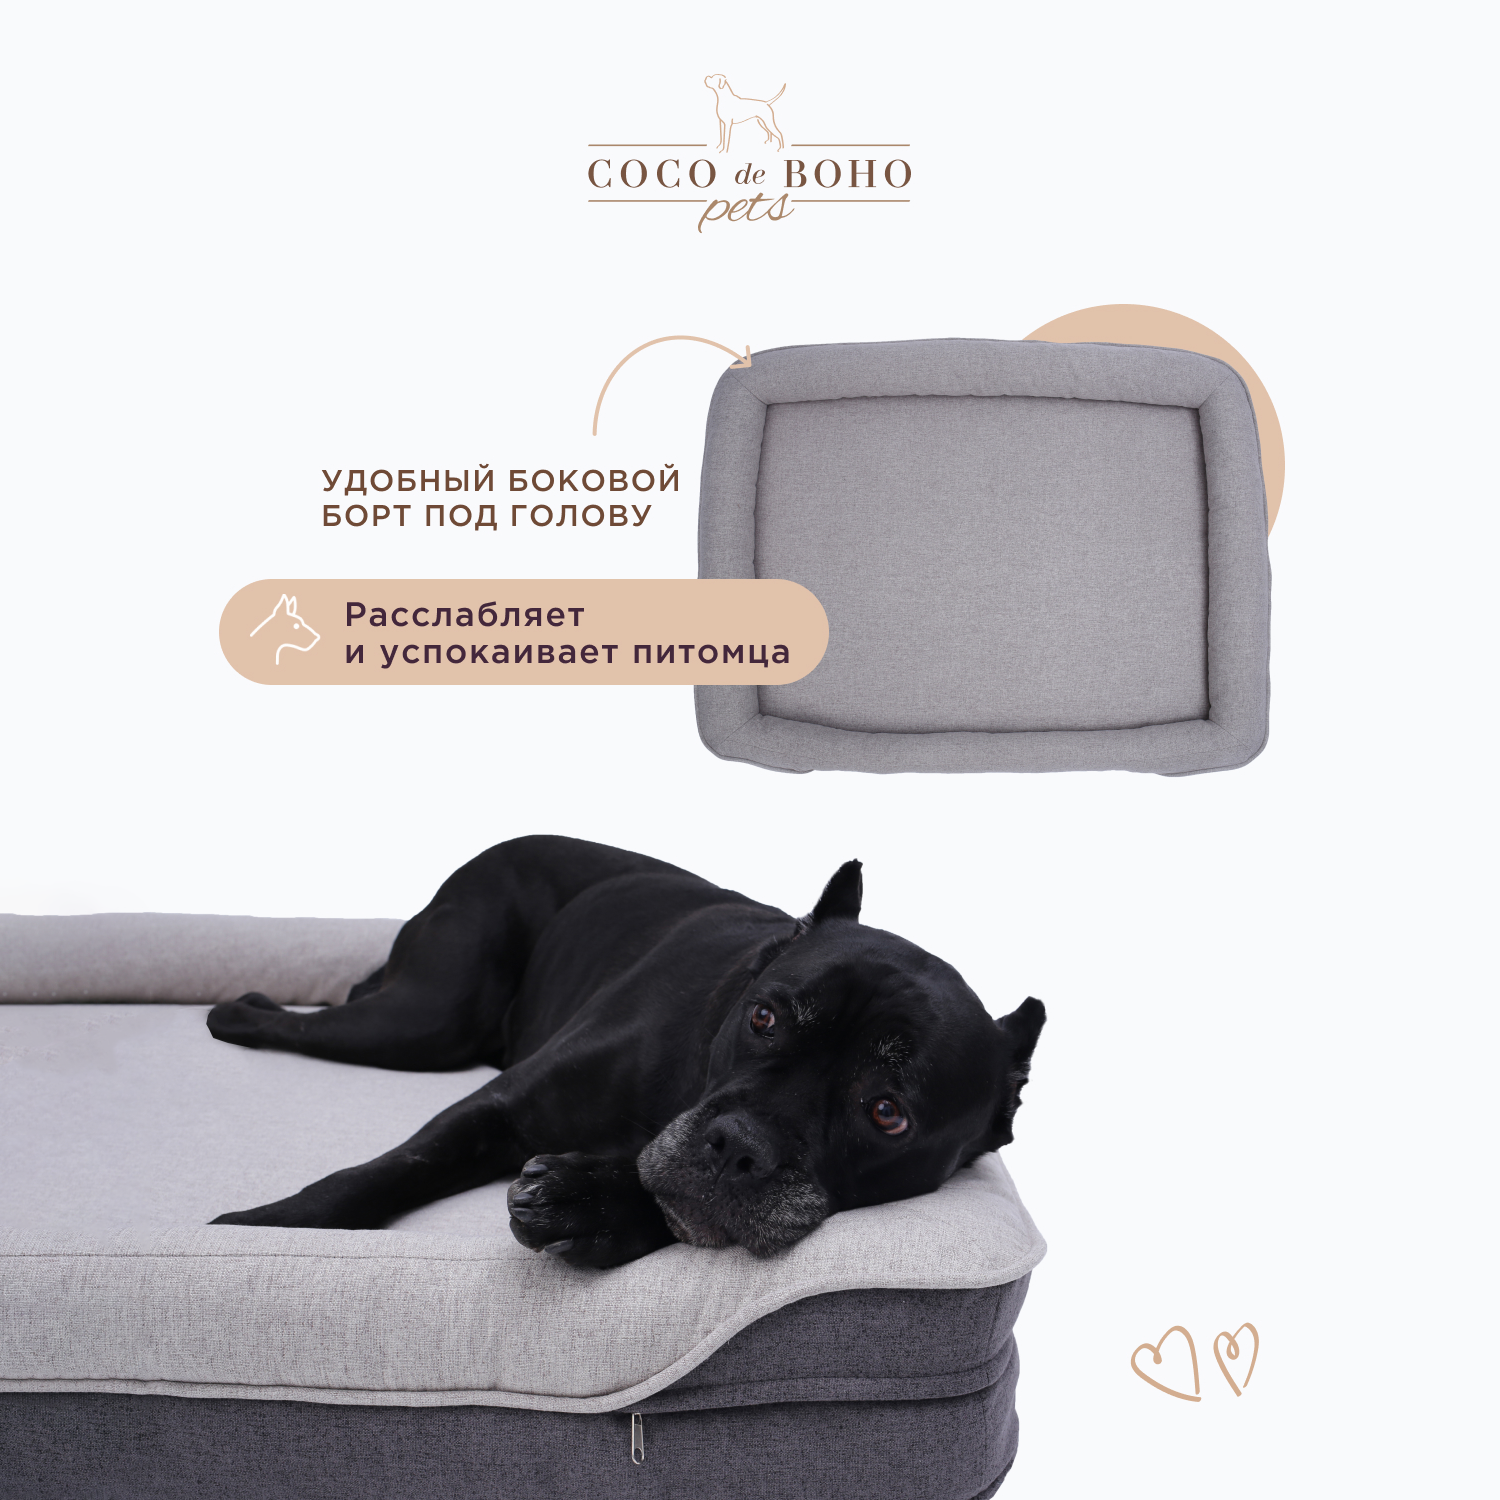 Лежанка для собак больших пород и для кошек Coco de Boho Pets, 119х90х19 см лежак для животных темно-серая - фотография № 9